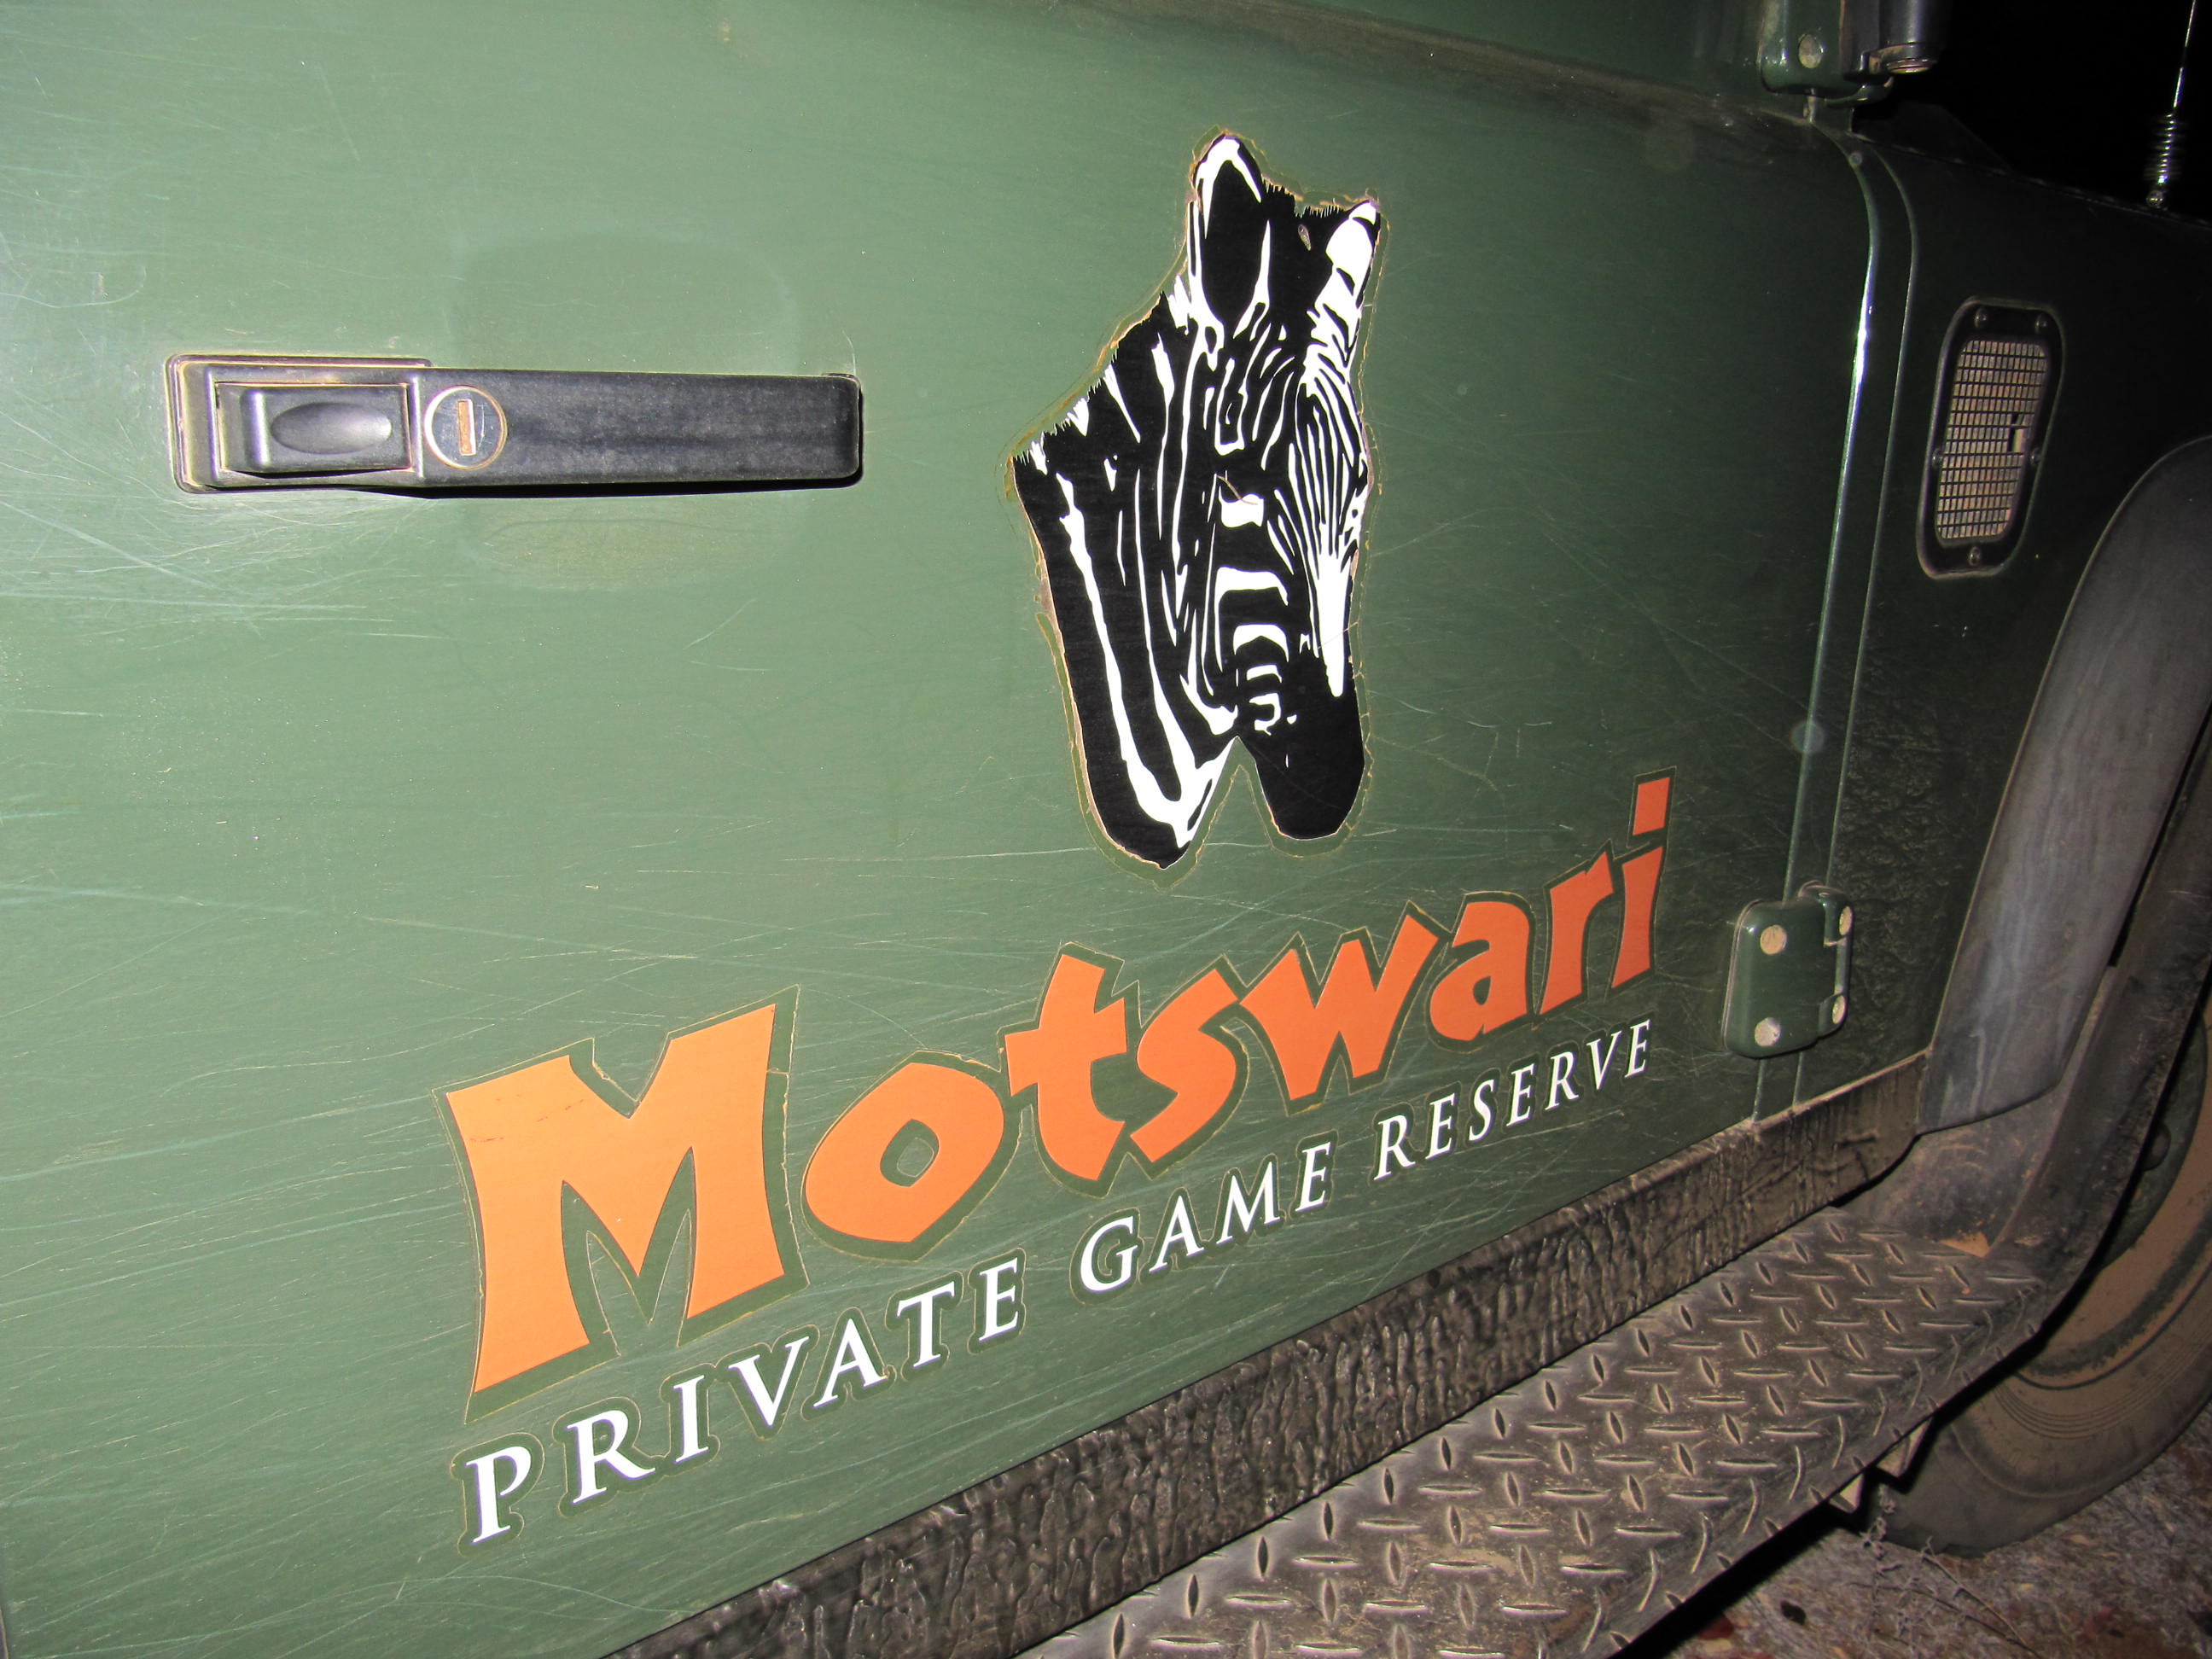 Motswari Game Vehicle